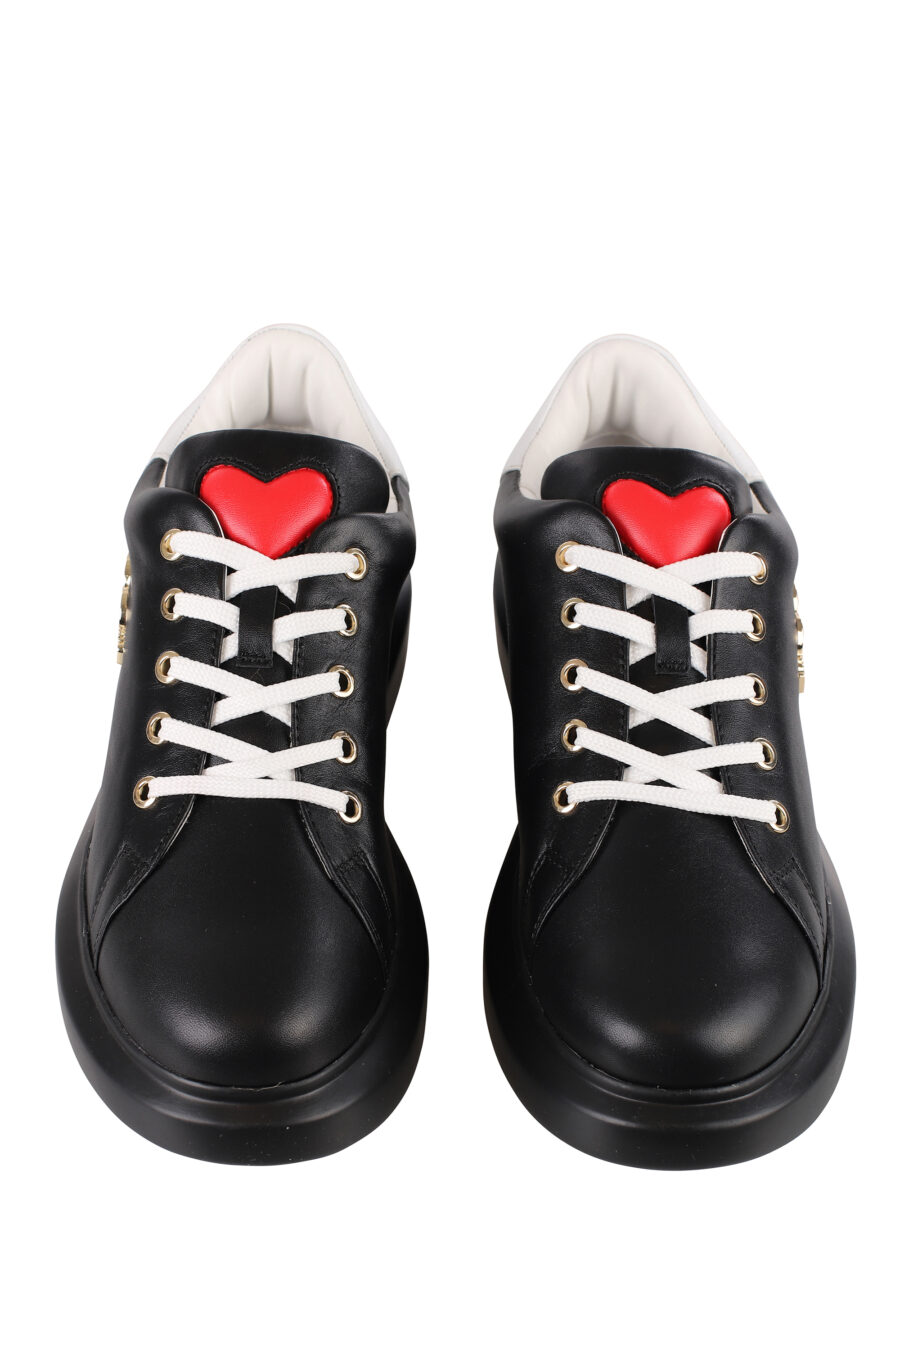 Zapatillas negras con logo en metal dorado y suela negra - IMG 1222